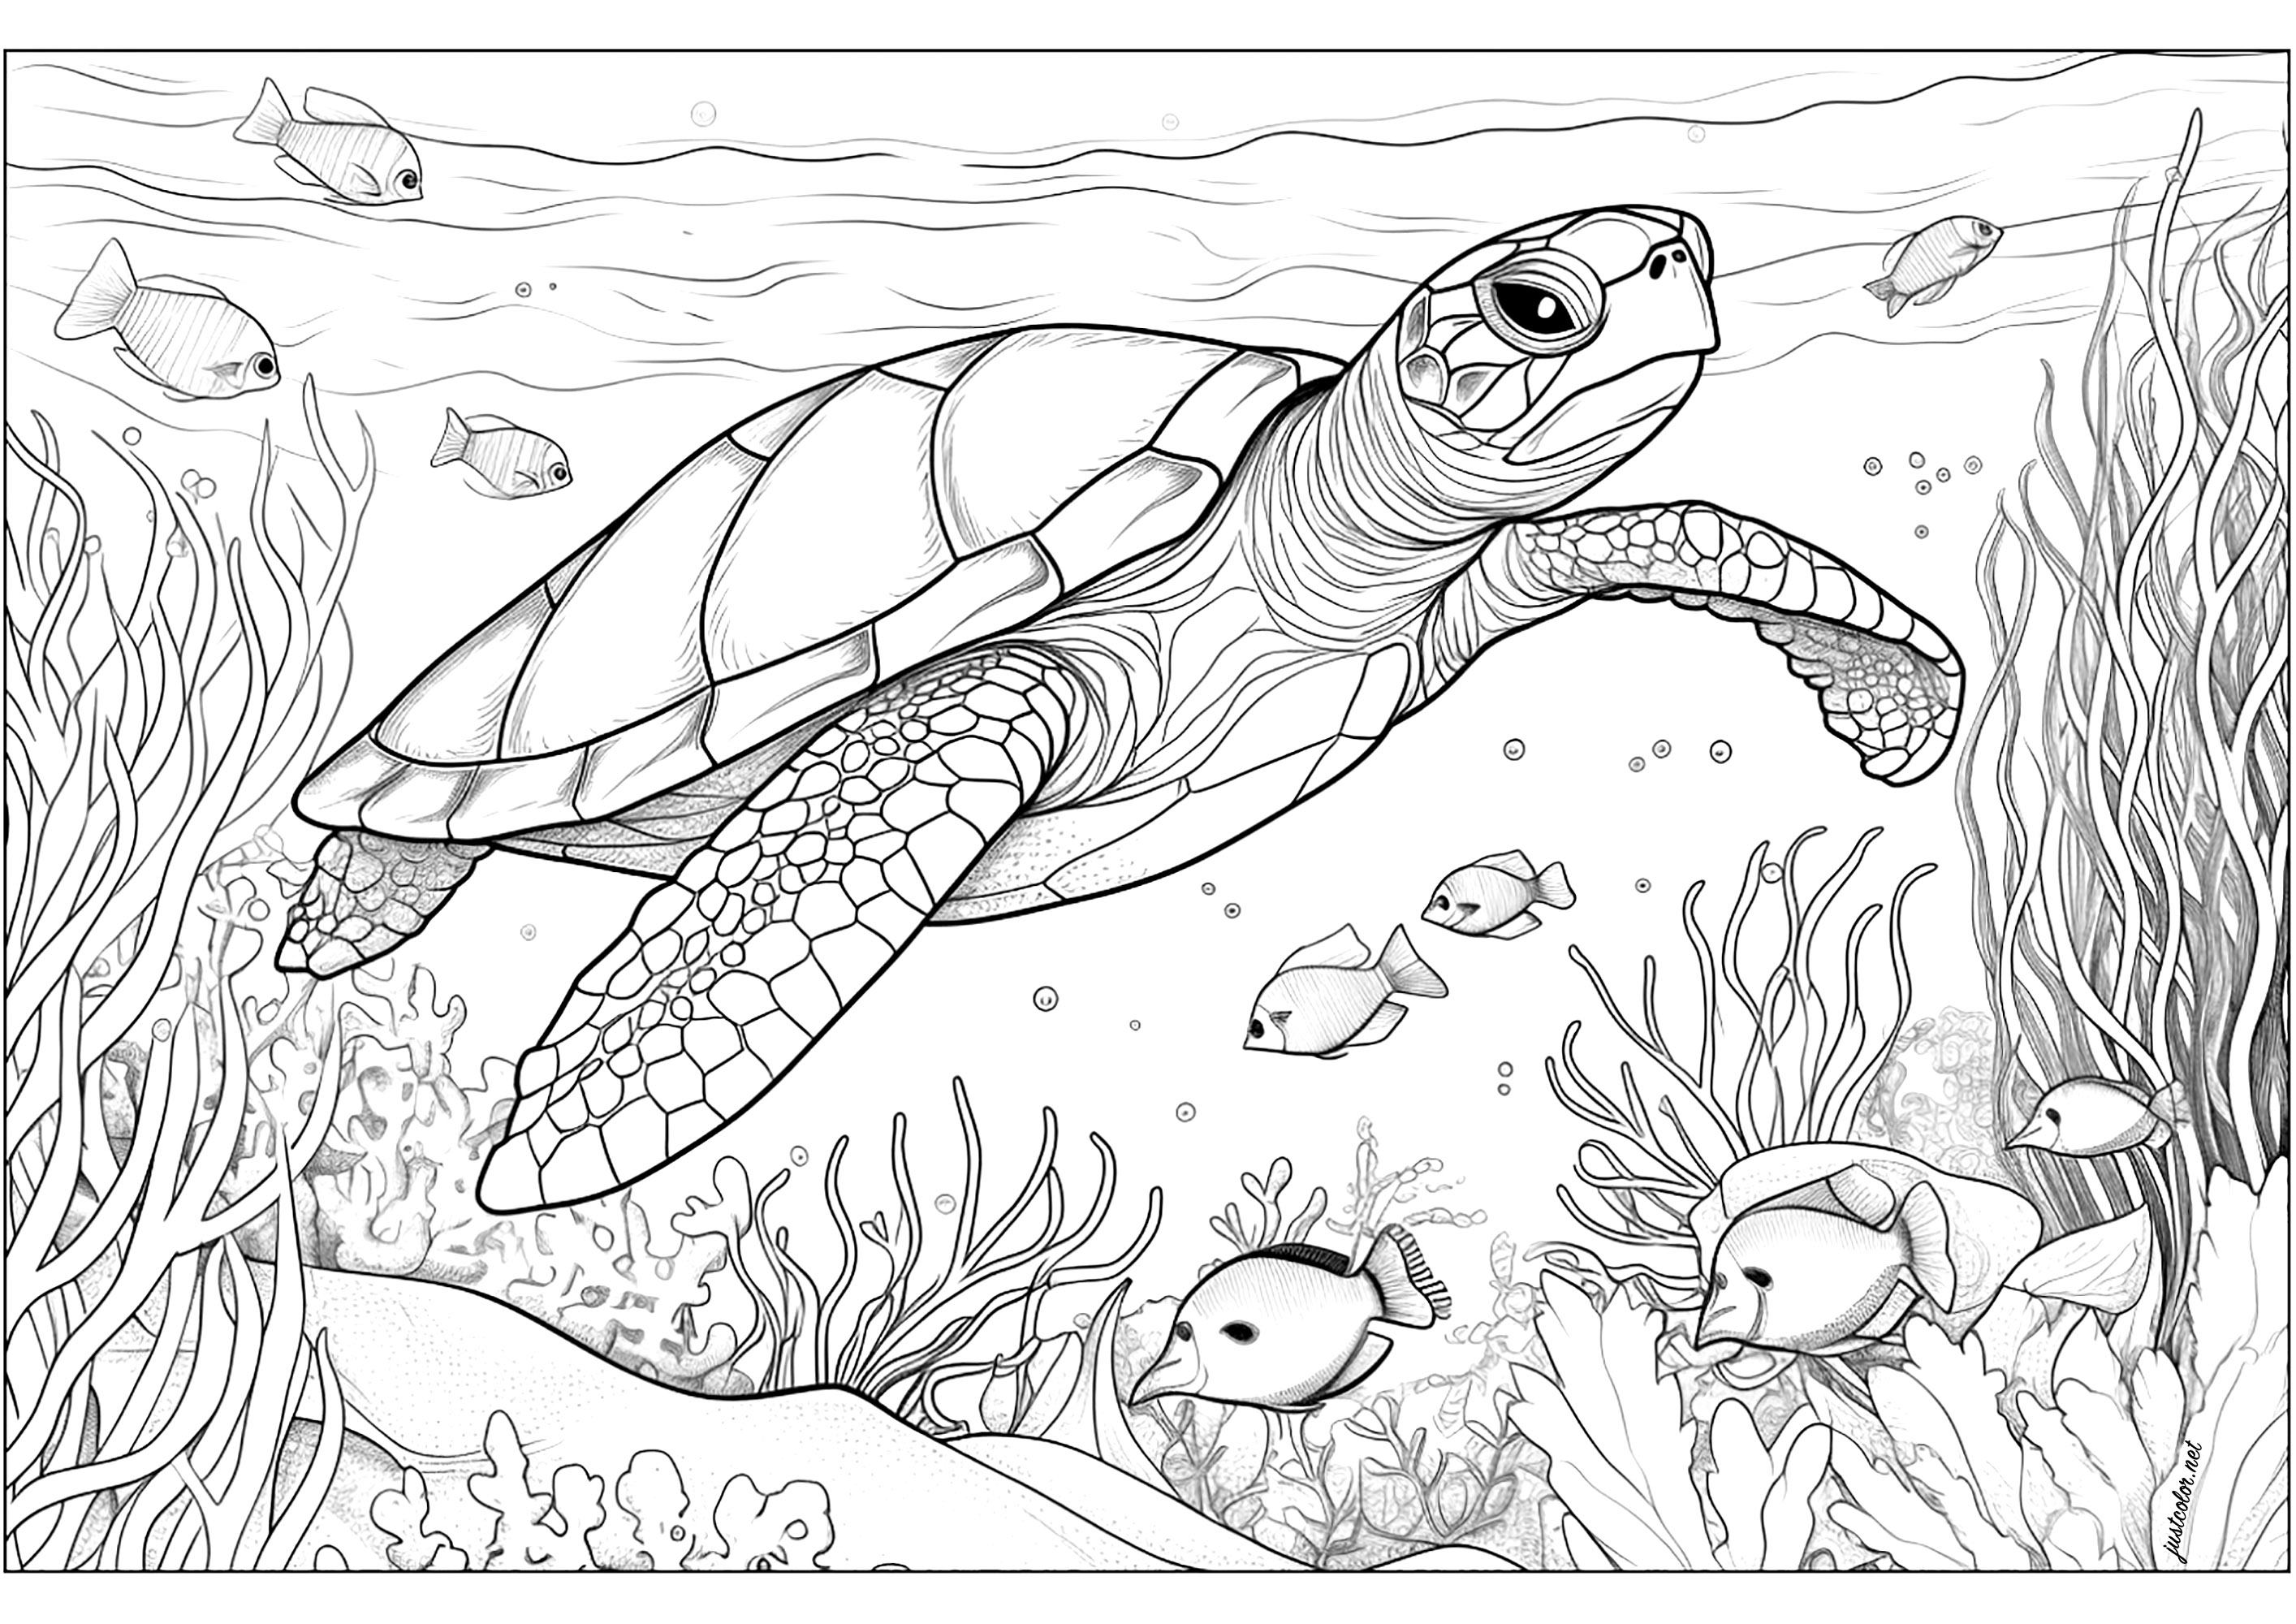 Tartaruga marinha com algas e peixe. As algas estão espalhadas e agitam-se lentamente à volta da tartaruga, enquanto os peixes nadam alegremente à sua volta.